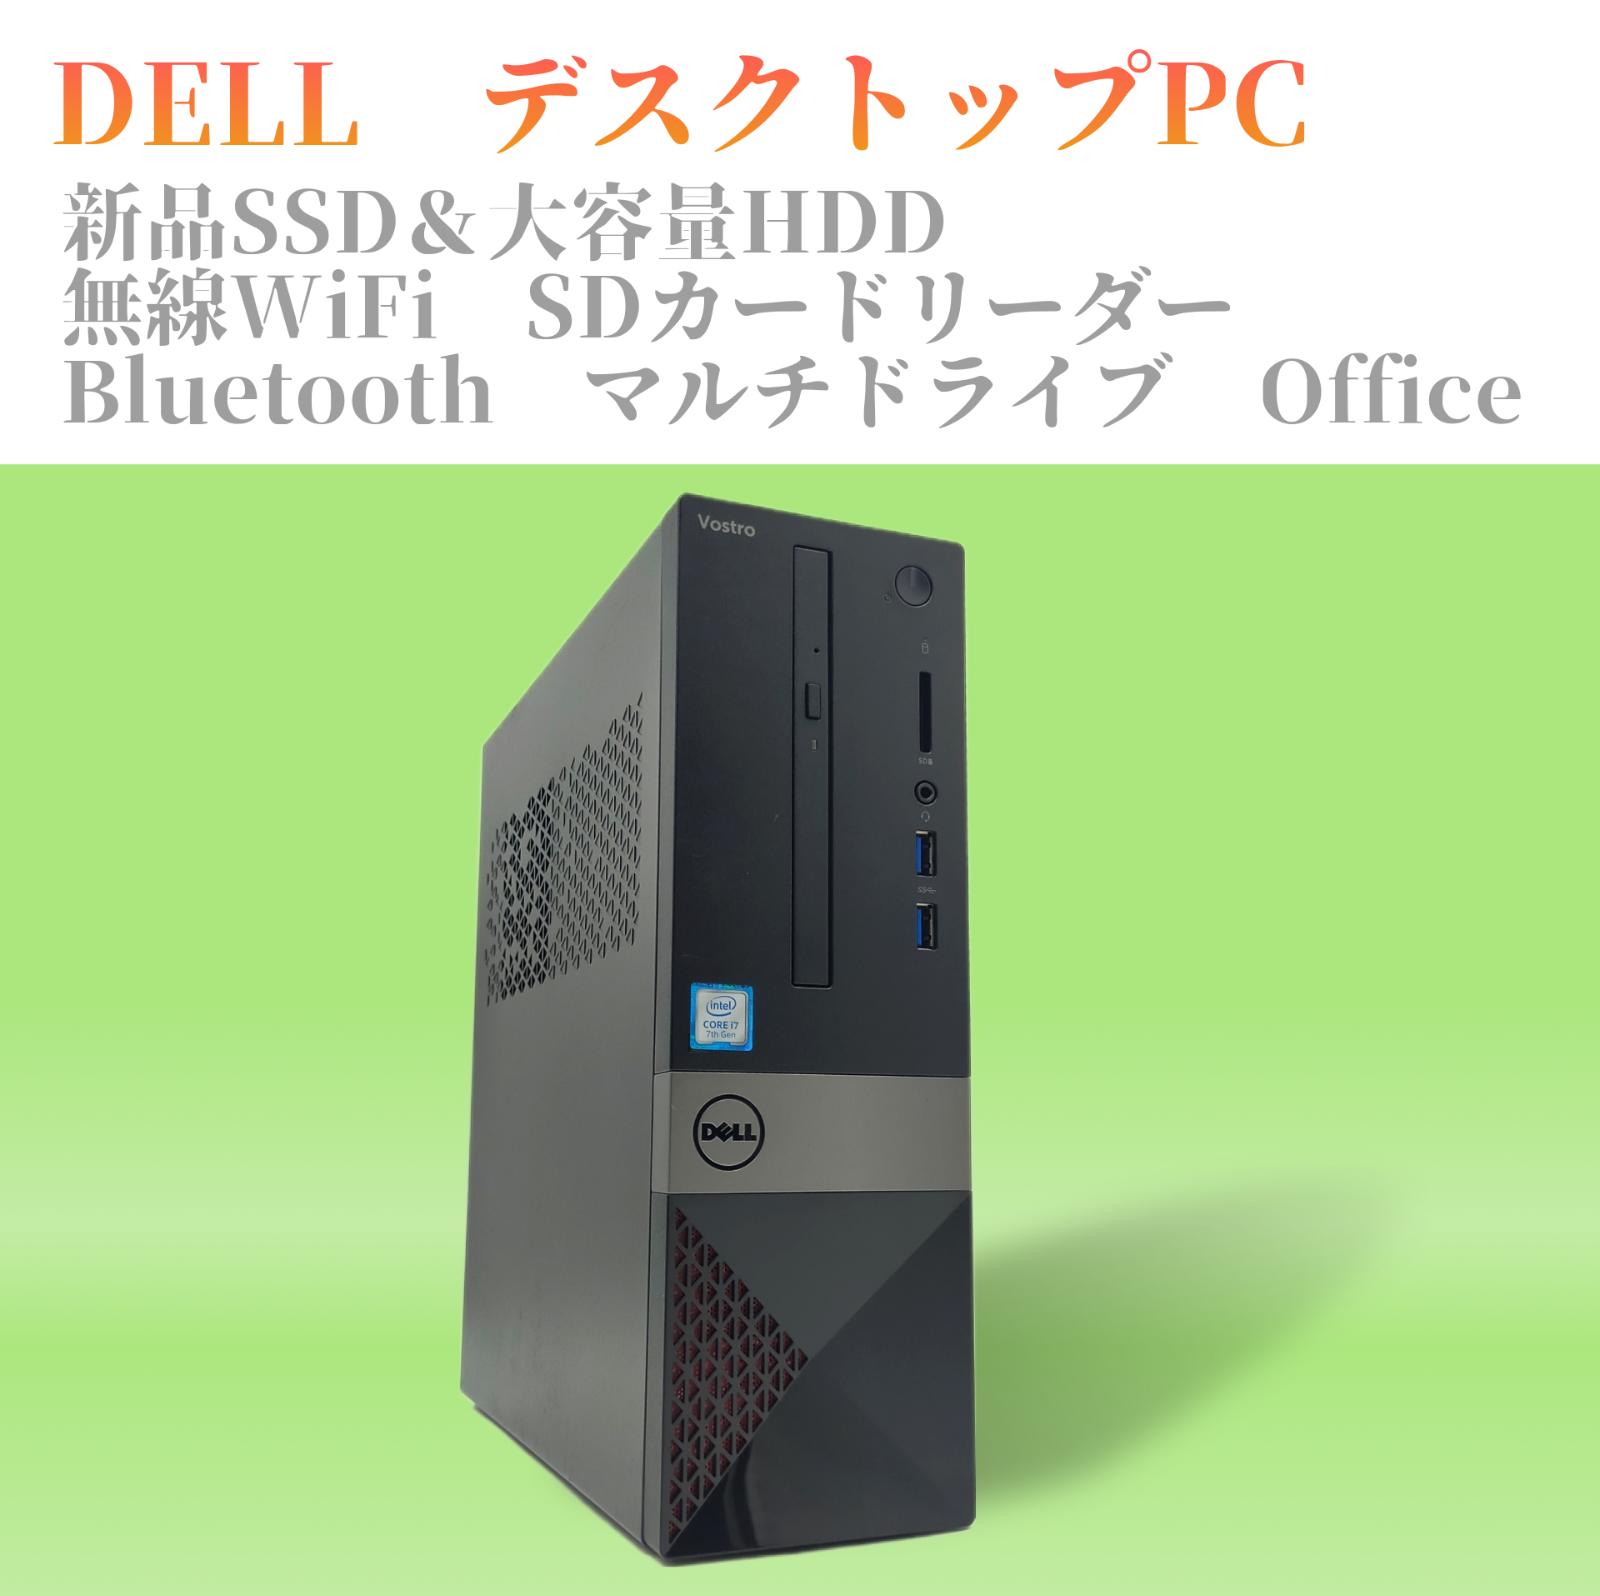 デル デスクトップパソコン 本体 ビジネスPC エクセル等 WIFI 大容量HD